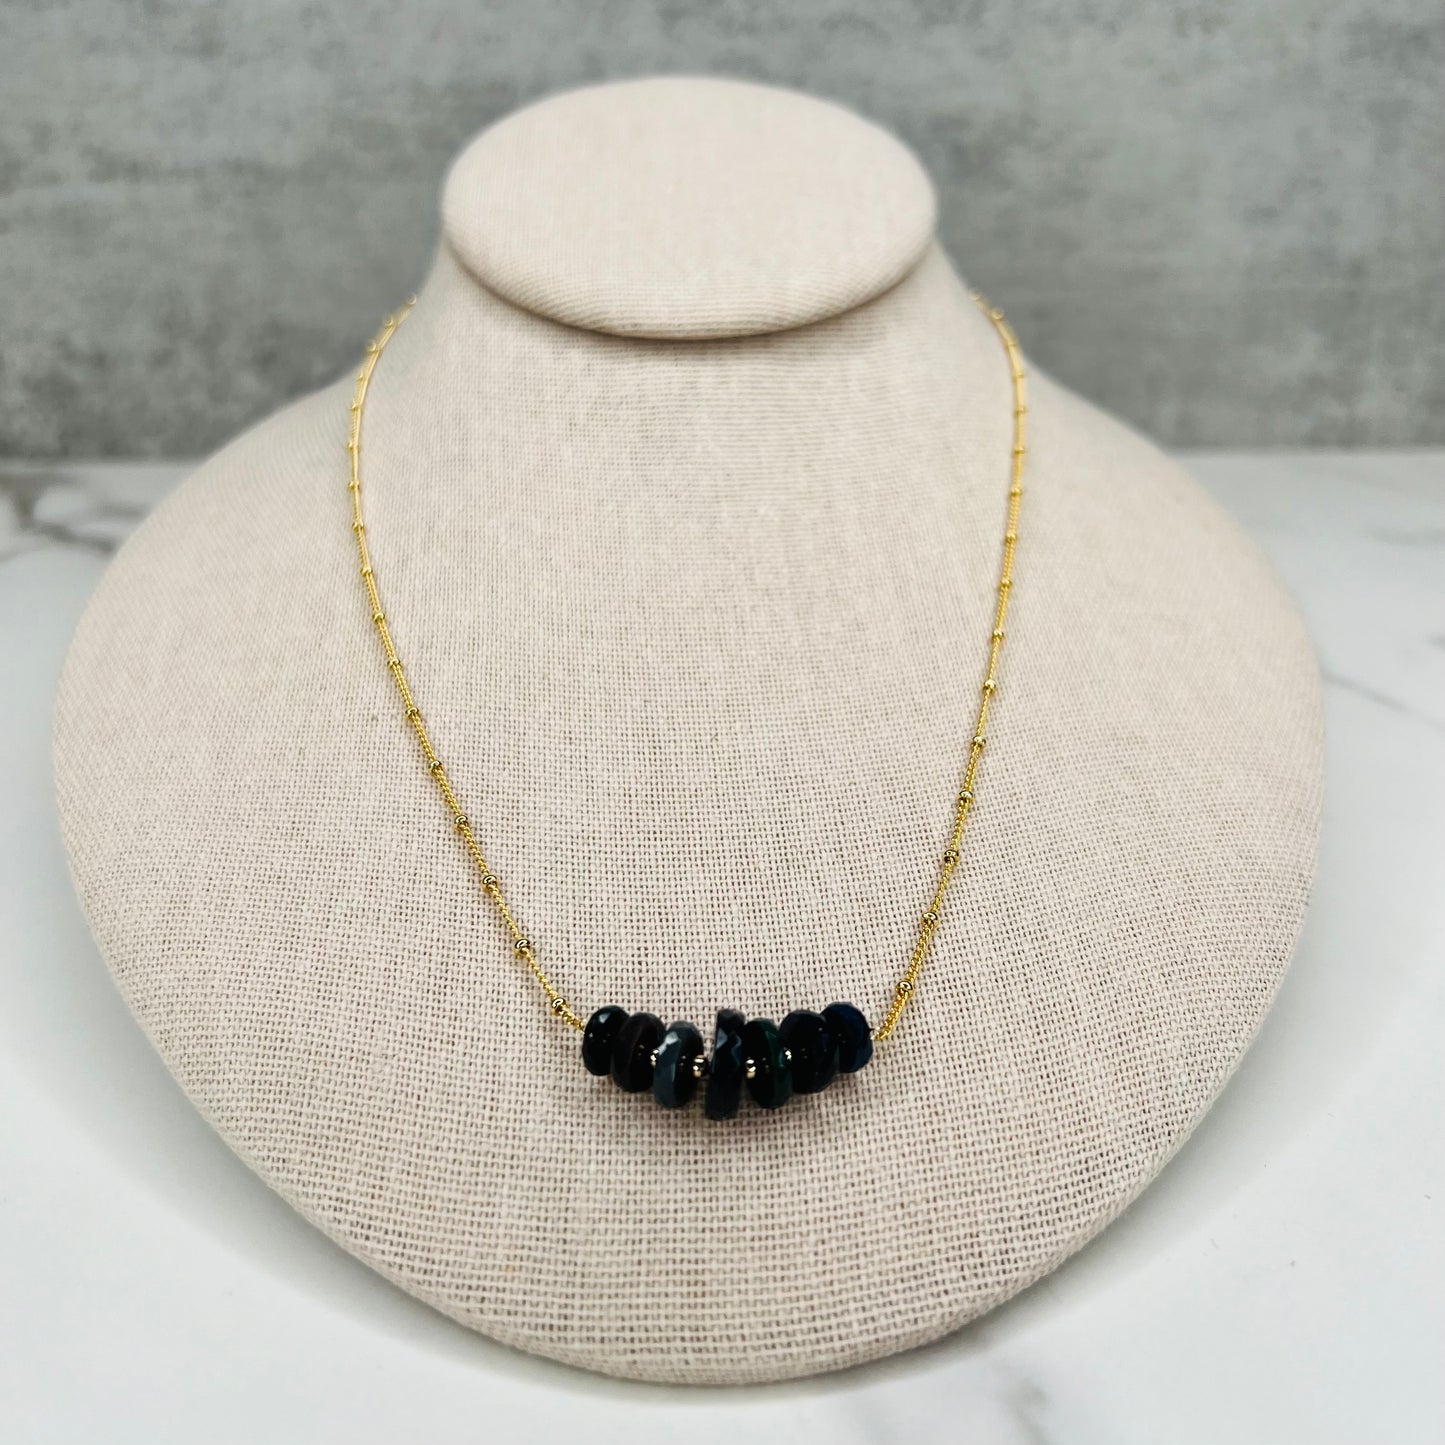 Dainty Black Opal Necklace